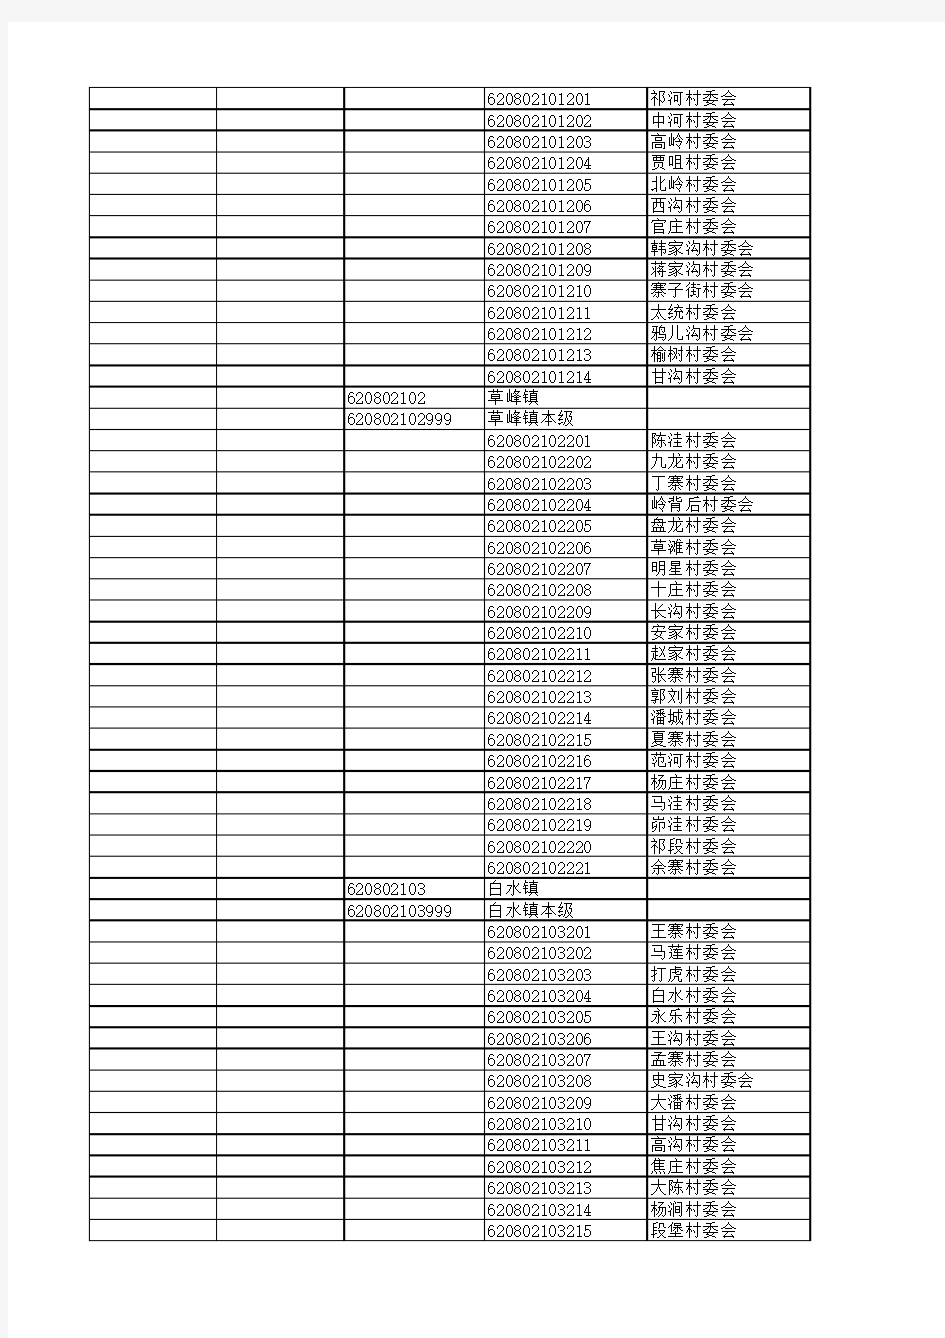 平凉市行政区划代码表